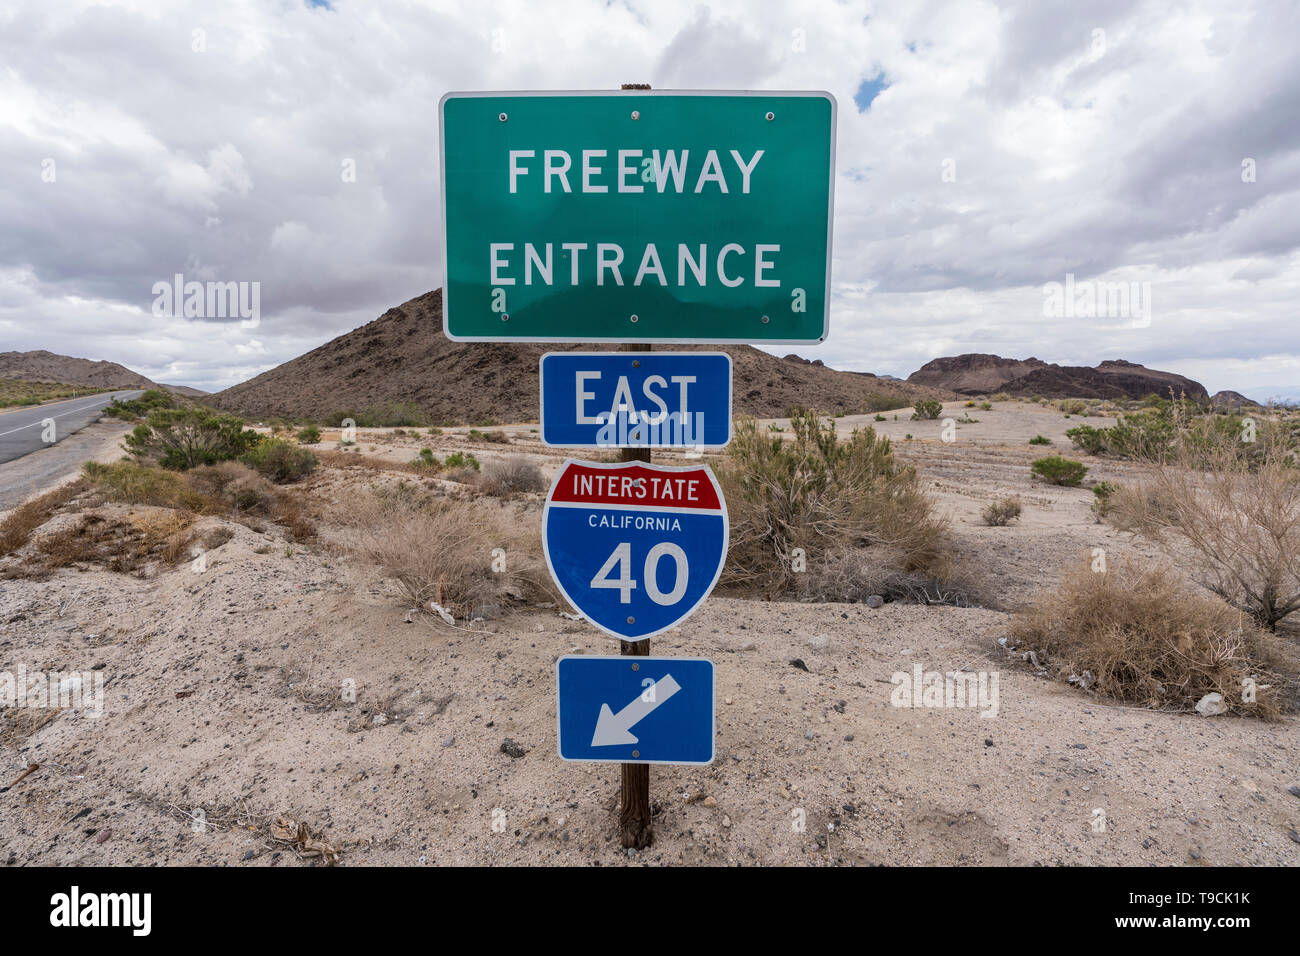 Interstate 40 East freeway sul segno di rampa vicino Mojave National Preserve nella regione desertica del sud della California. Foto Stock